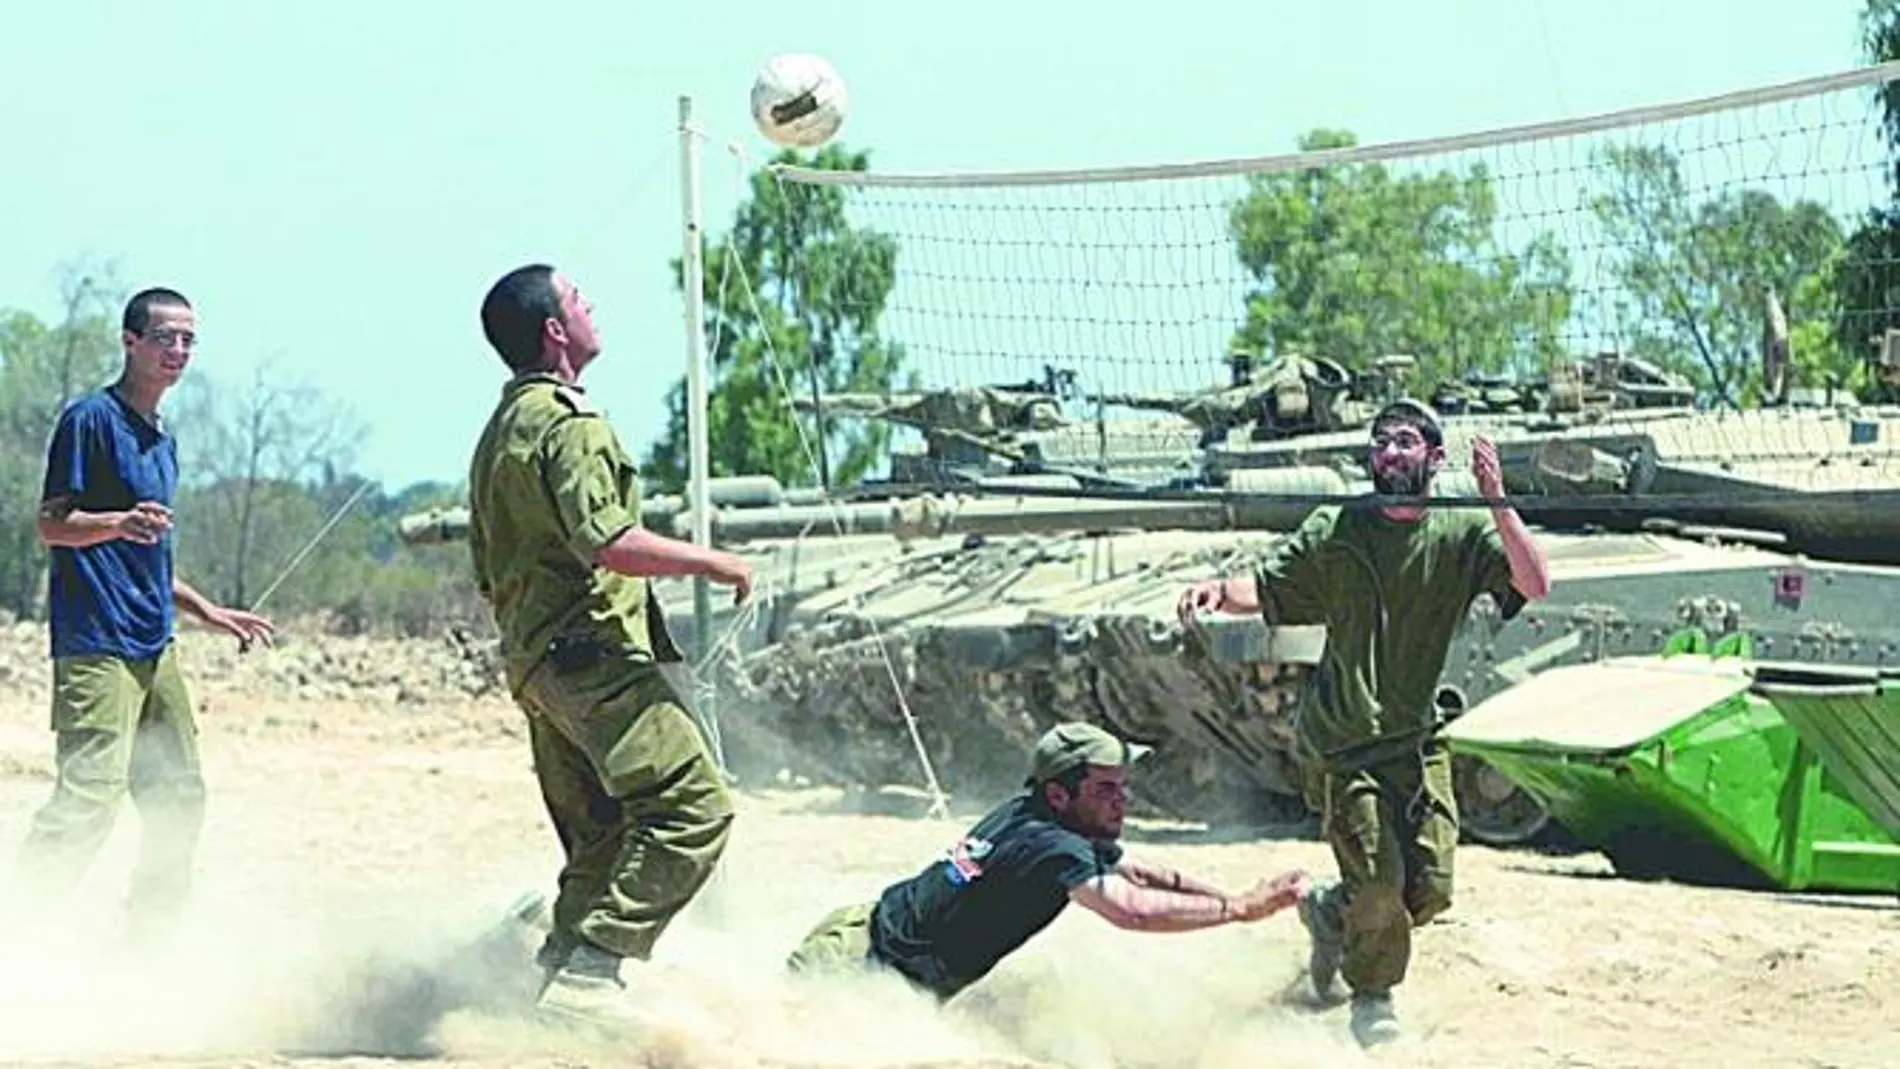 En Israel, el Ejército forma parte de la vida común de los ciudadanos. Todos los jóvenes tienen que hacer el servicio militar